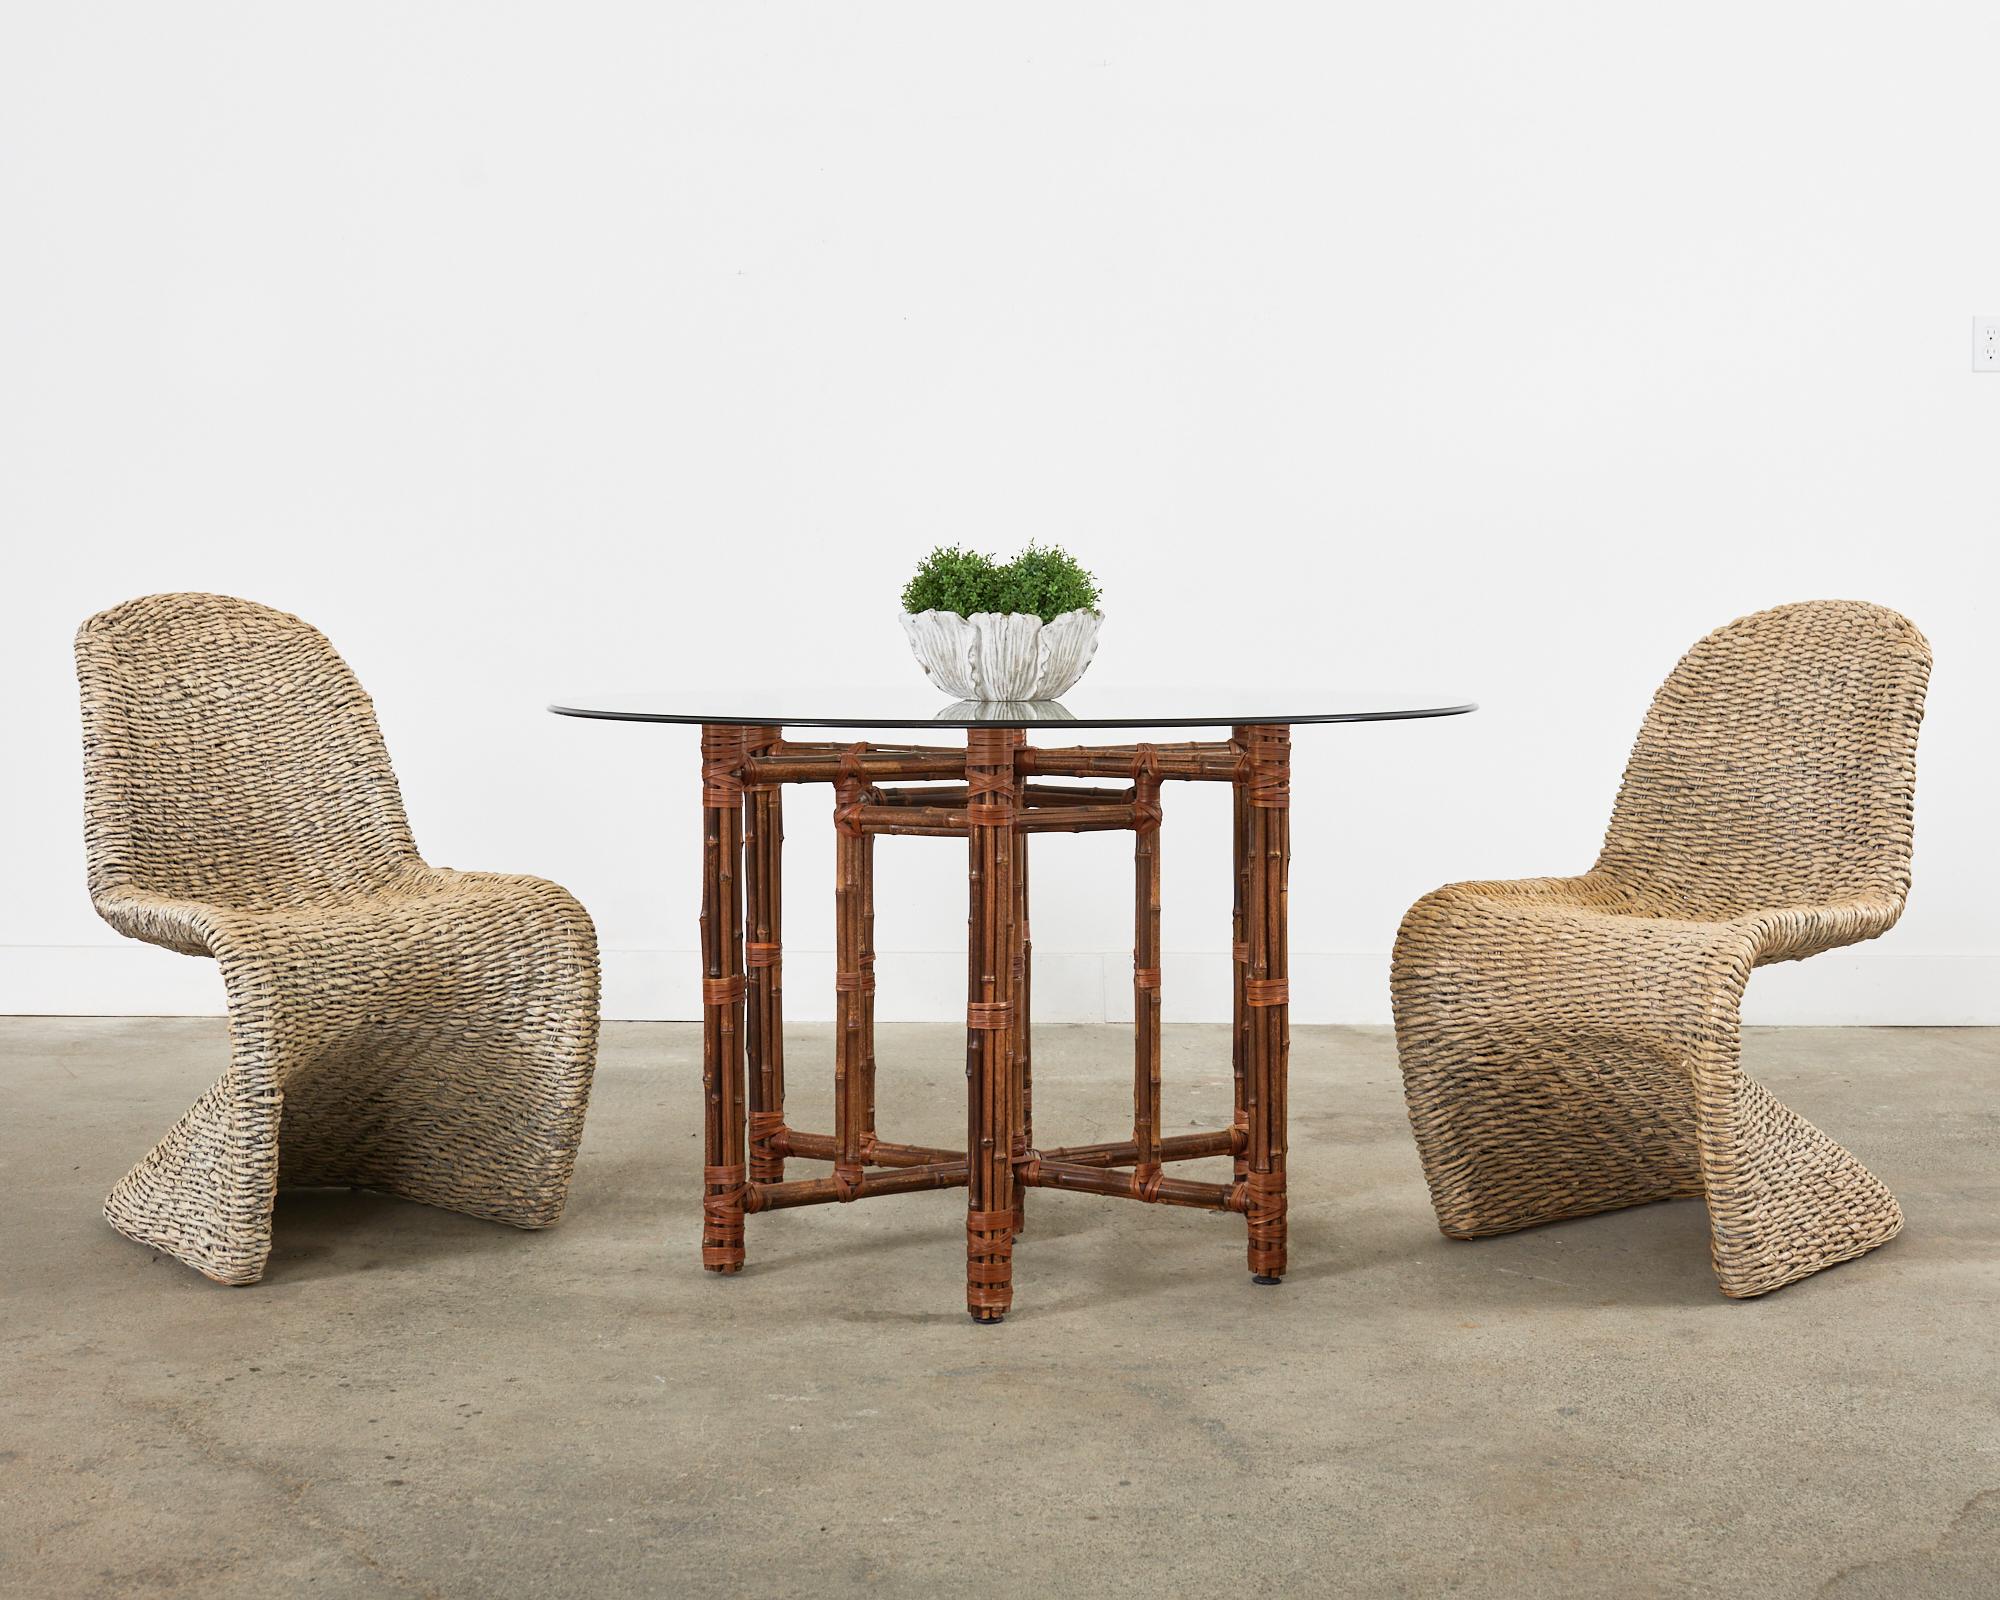 Ensemble élégant de huit chaises de salle à manger en osier tressé, fabriquées dans le style moderne du milieu du siècle de Verner Panton. Les chaises sont dotées d'un cadre métallique gracieusement incurvé, entièrement enveloppé de feuilles d'osier